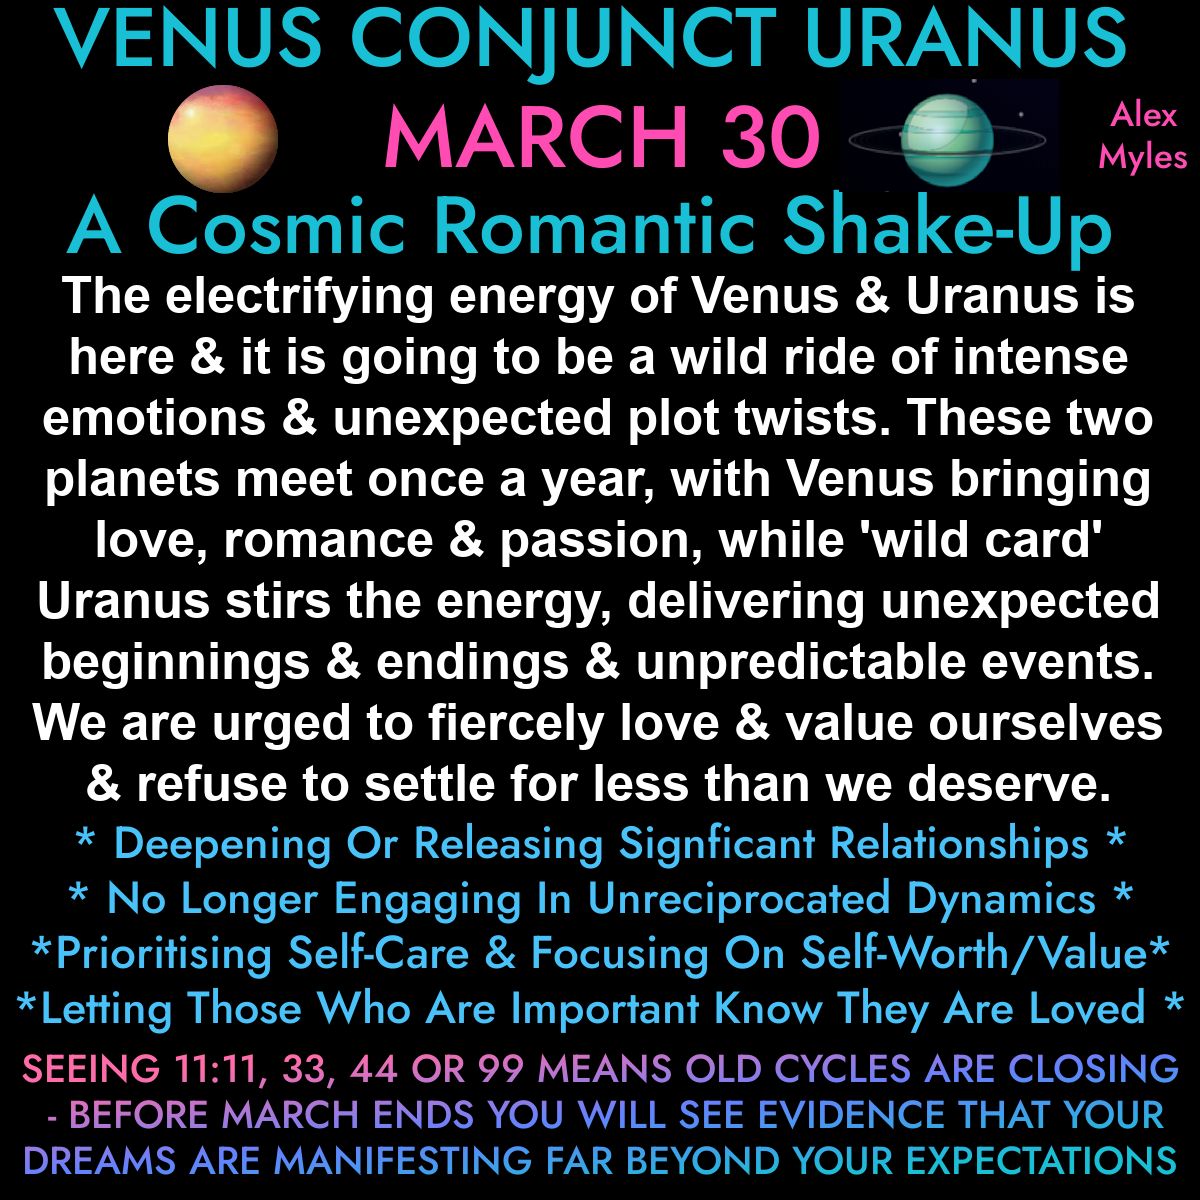 Venus conjunct Uranus in Taurus